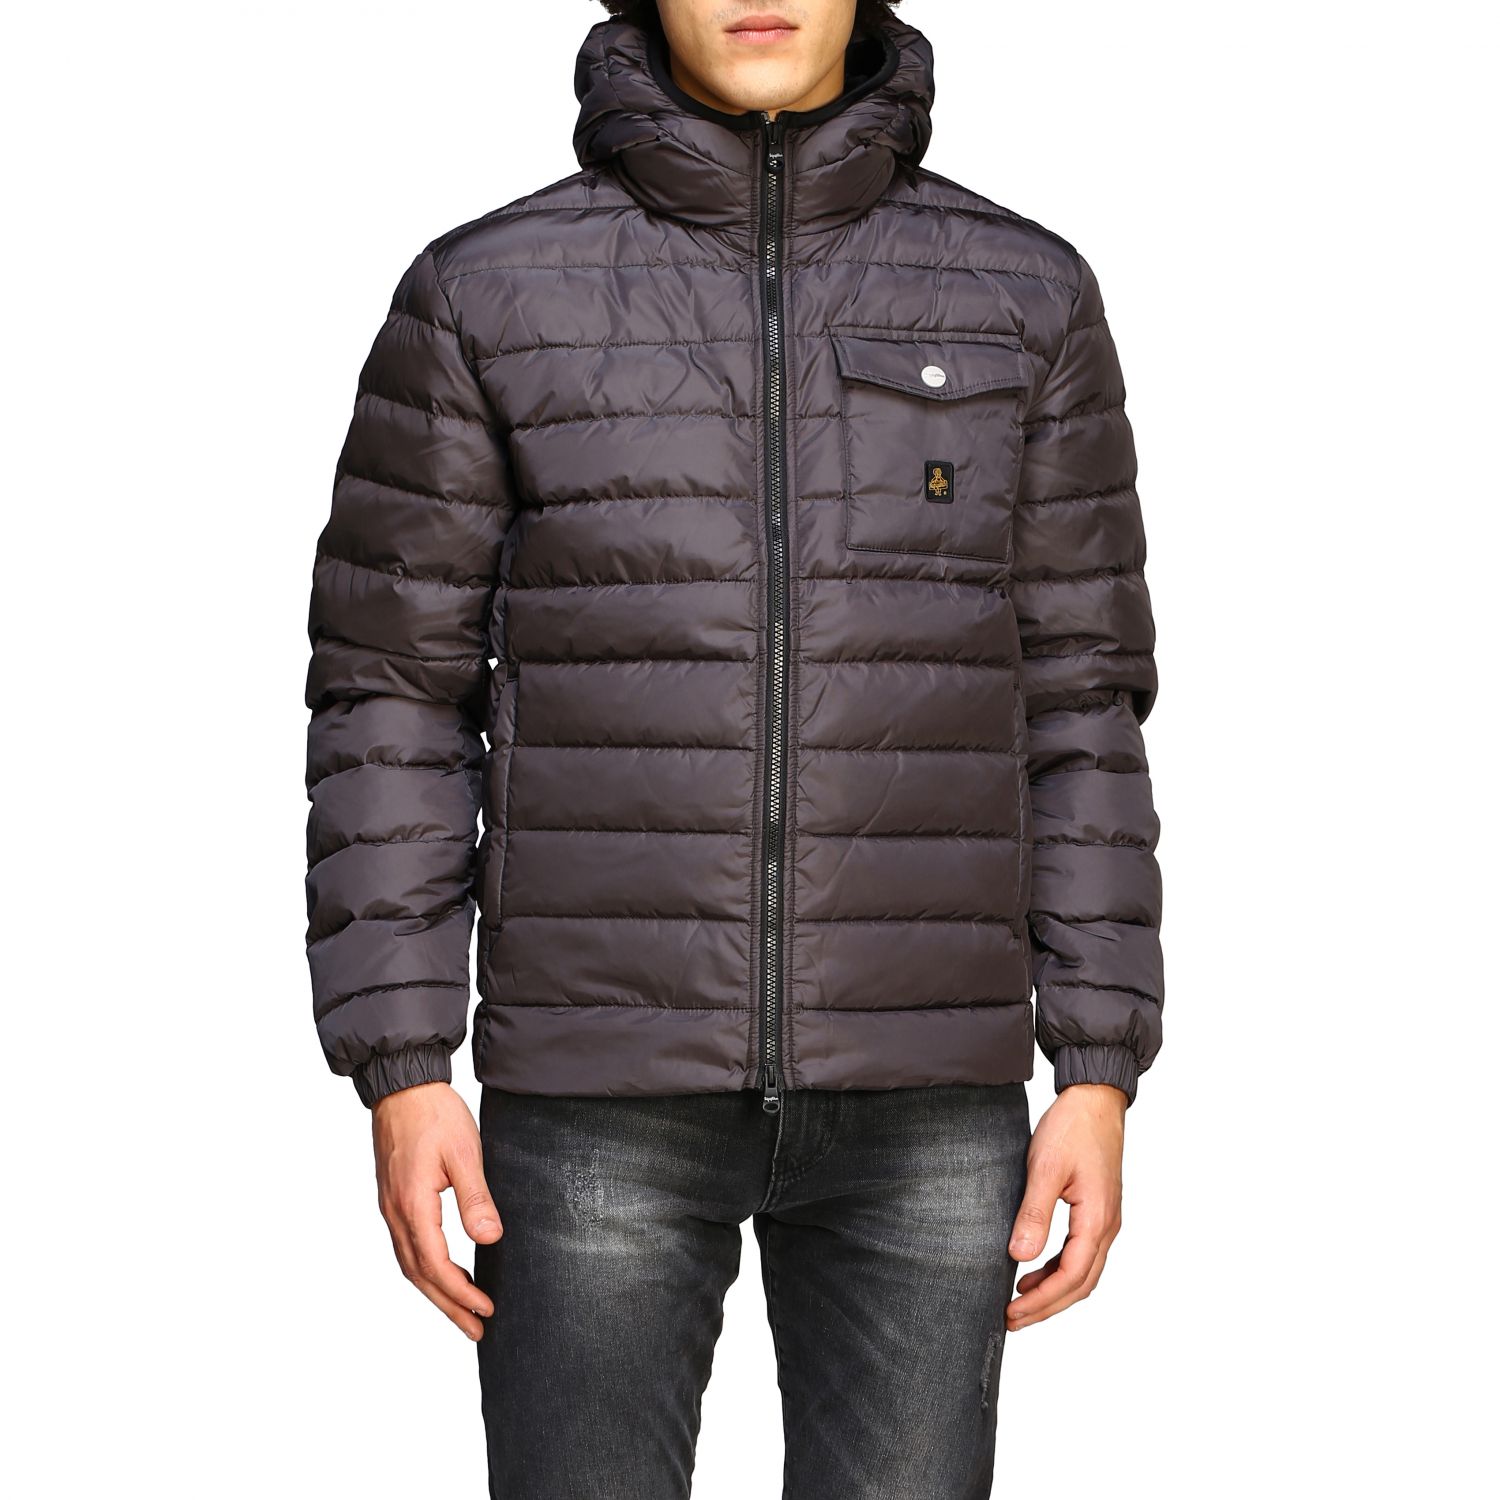 Refrigiwear Outlet: Jacket men - Charcoal | Jacket Refrigiwear G92700 ...